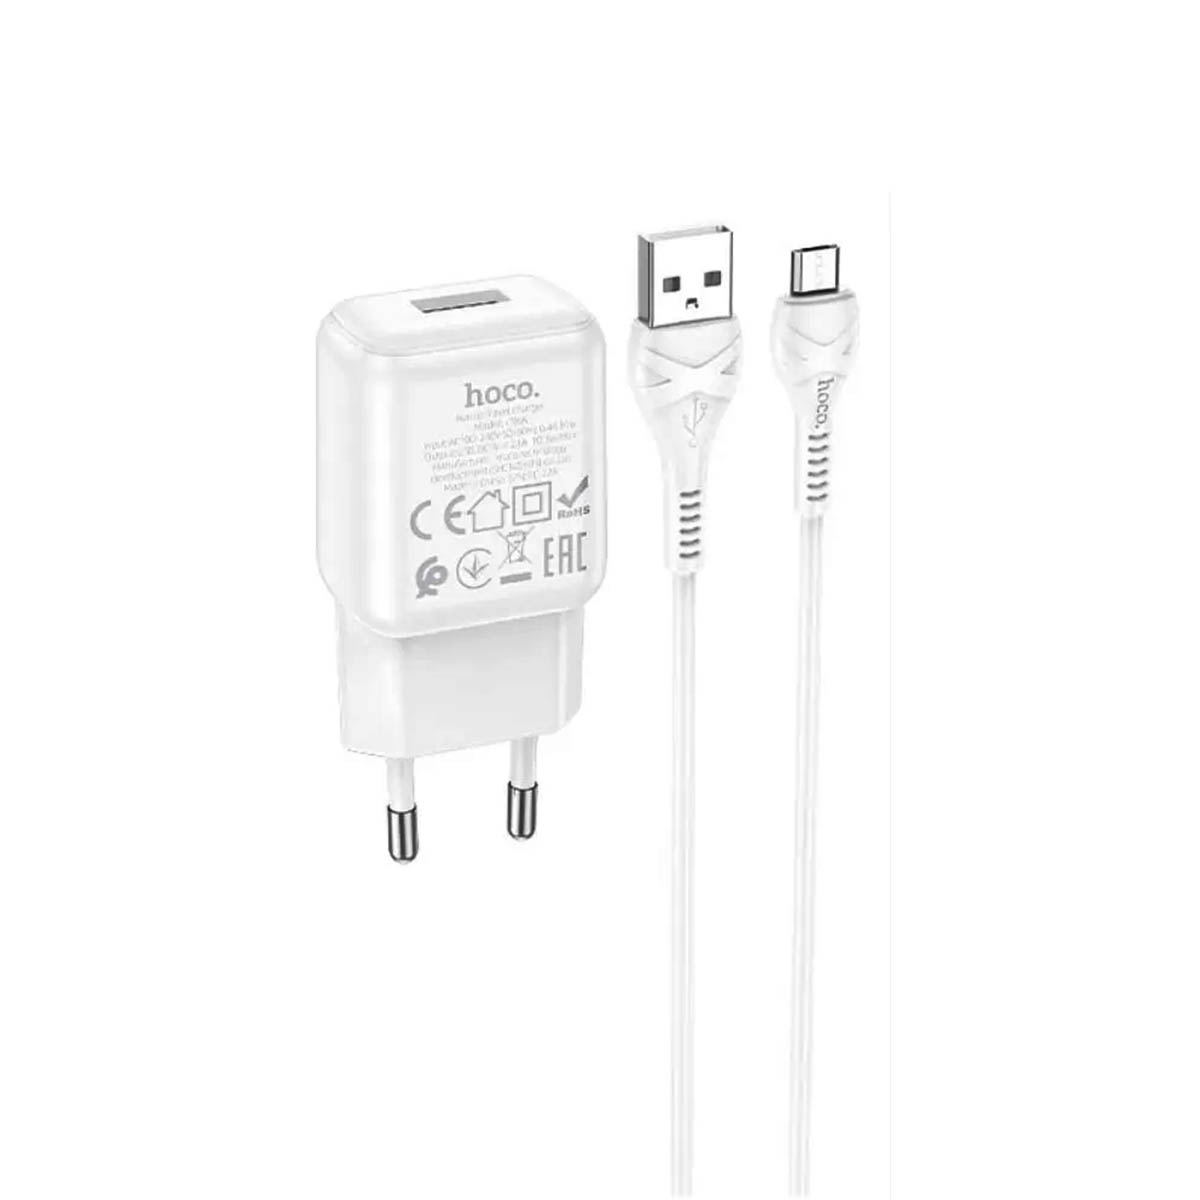 СЗУ (сетевое зарядное устройство) HOCO C96A, адаптер 1 USB 5V-2.1A, кабель micro USB, цвет белый